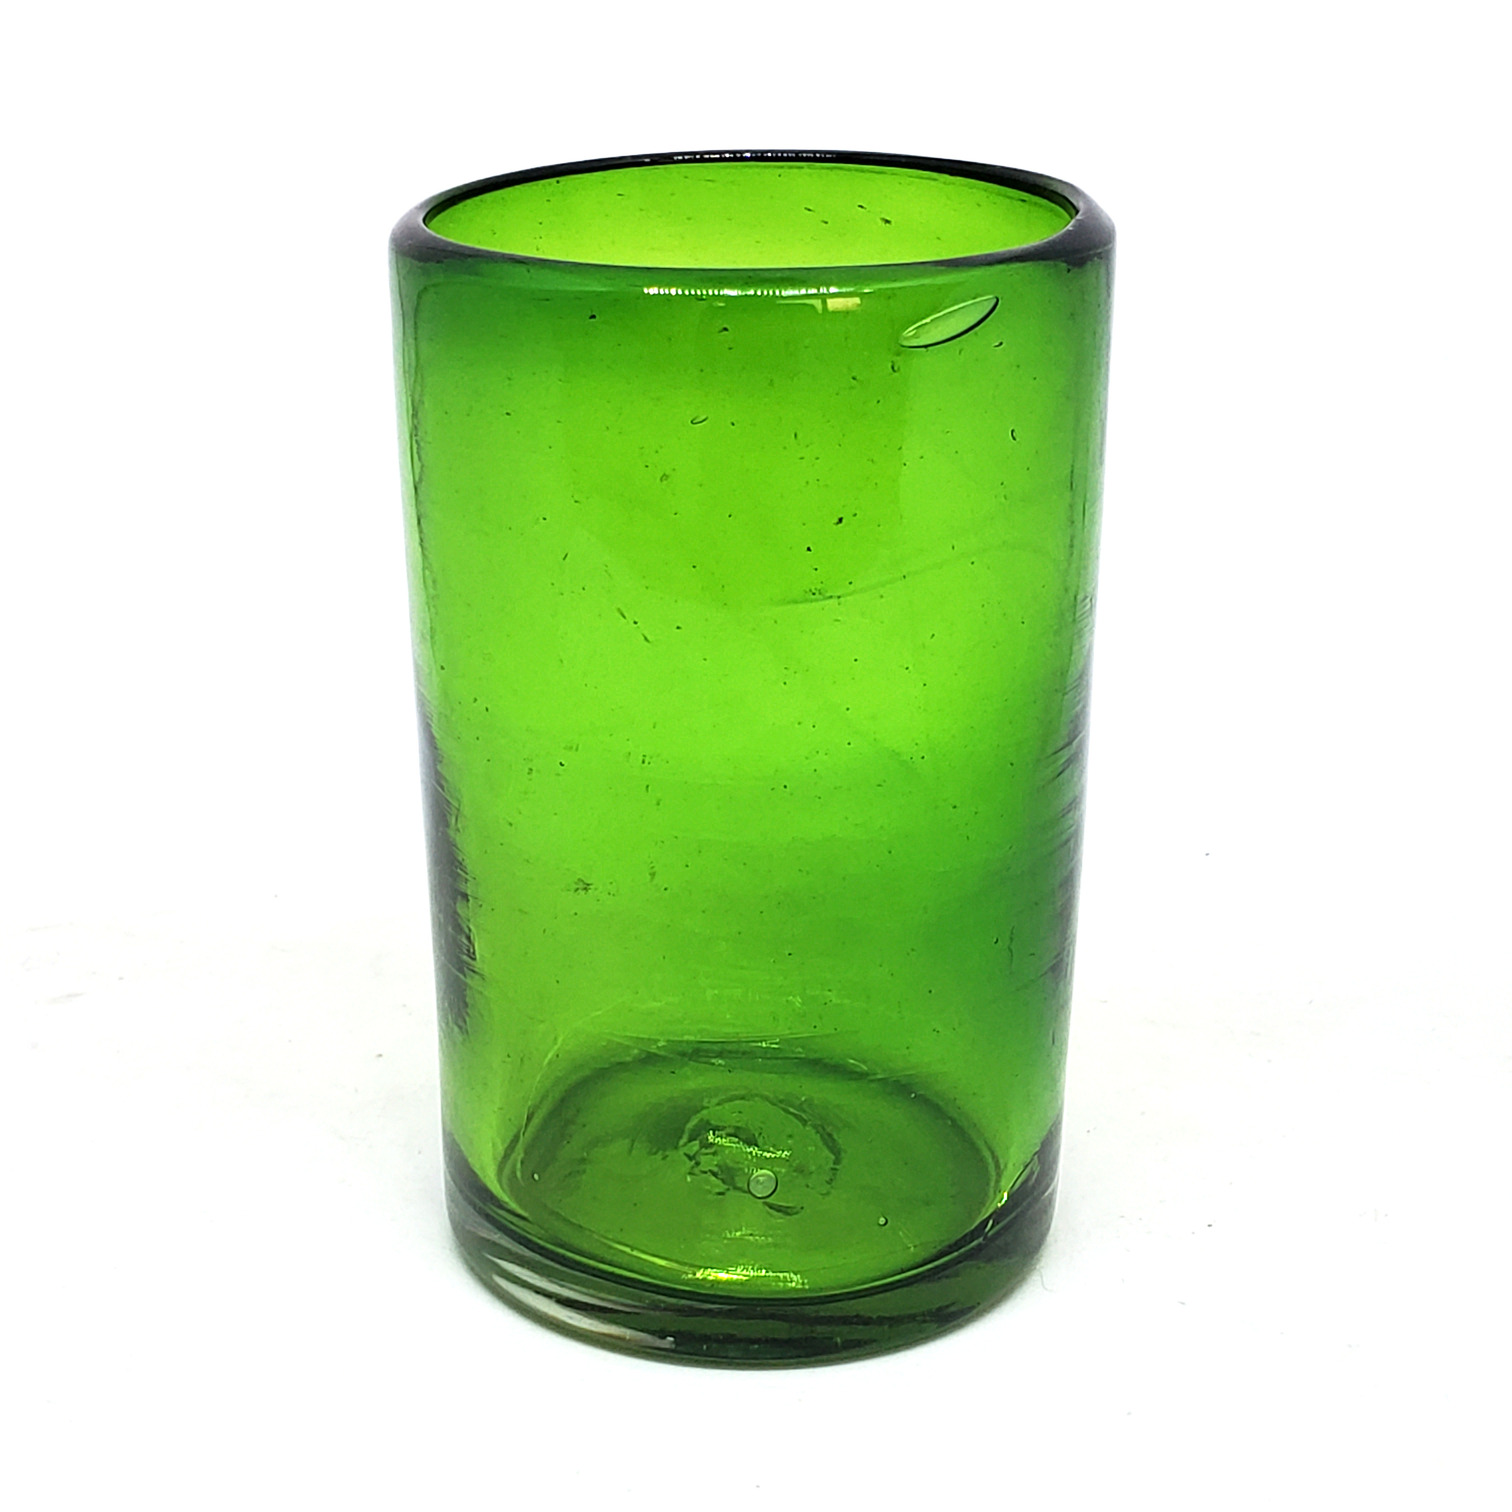 Colores Solidos / Juego de 6 vasos grandes color verde esmeralda / Éstos artesanales vasos le darán un toque clásico a su bebida favorita.